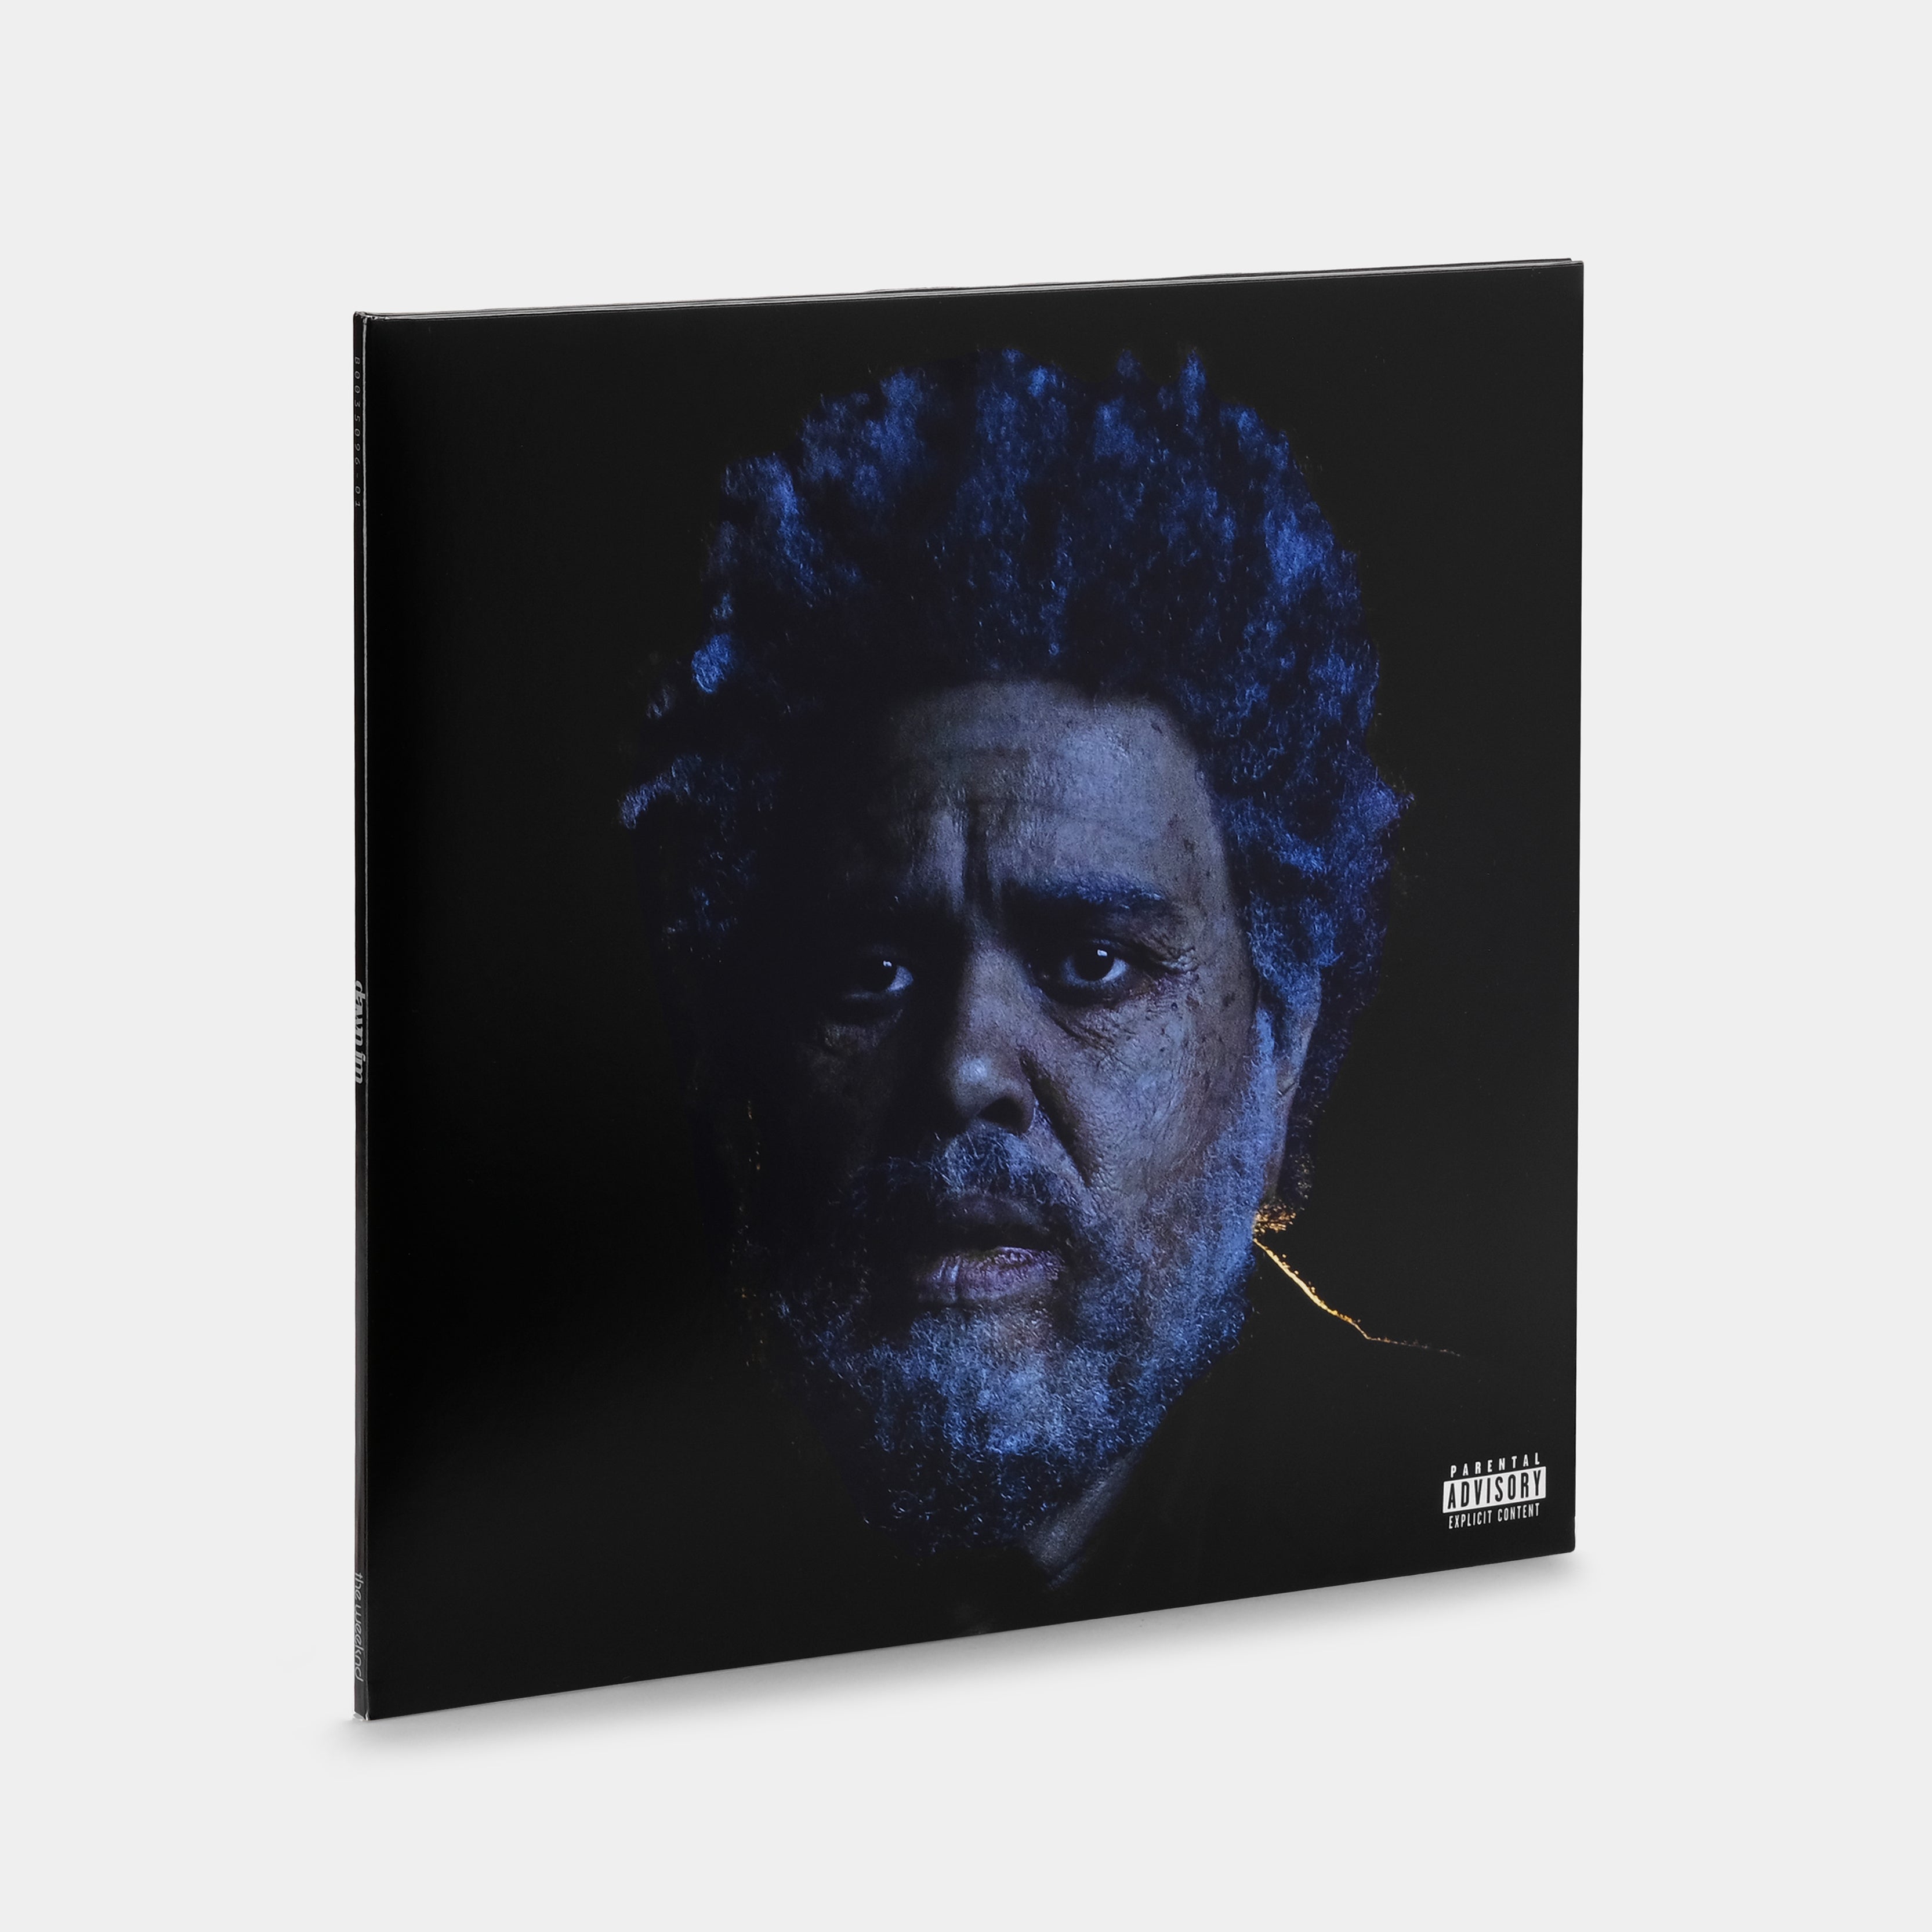 The Weeknd, DAWN FM - Vinyl - Disc 2 - Side A 